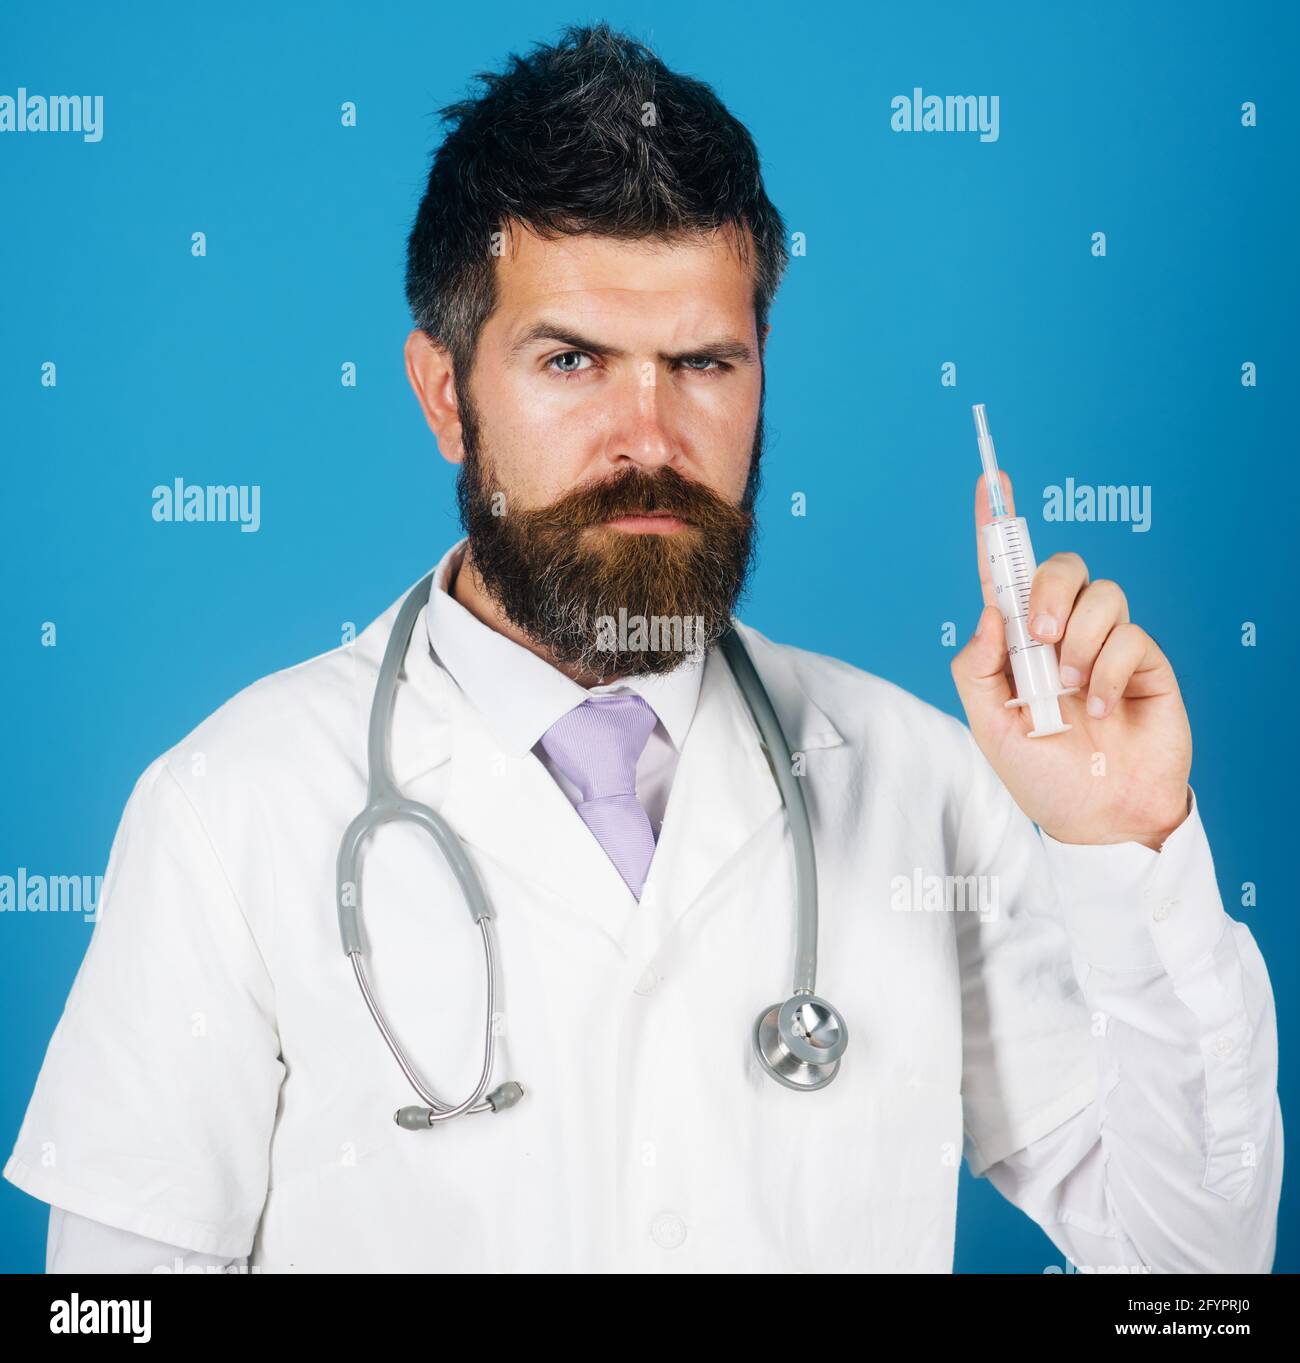 Medico in abito medico con siringa pronta per l'iniezione. Vaccinazione. Concetto di medicina e sanità. Foto Stock